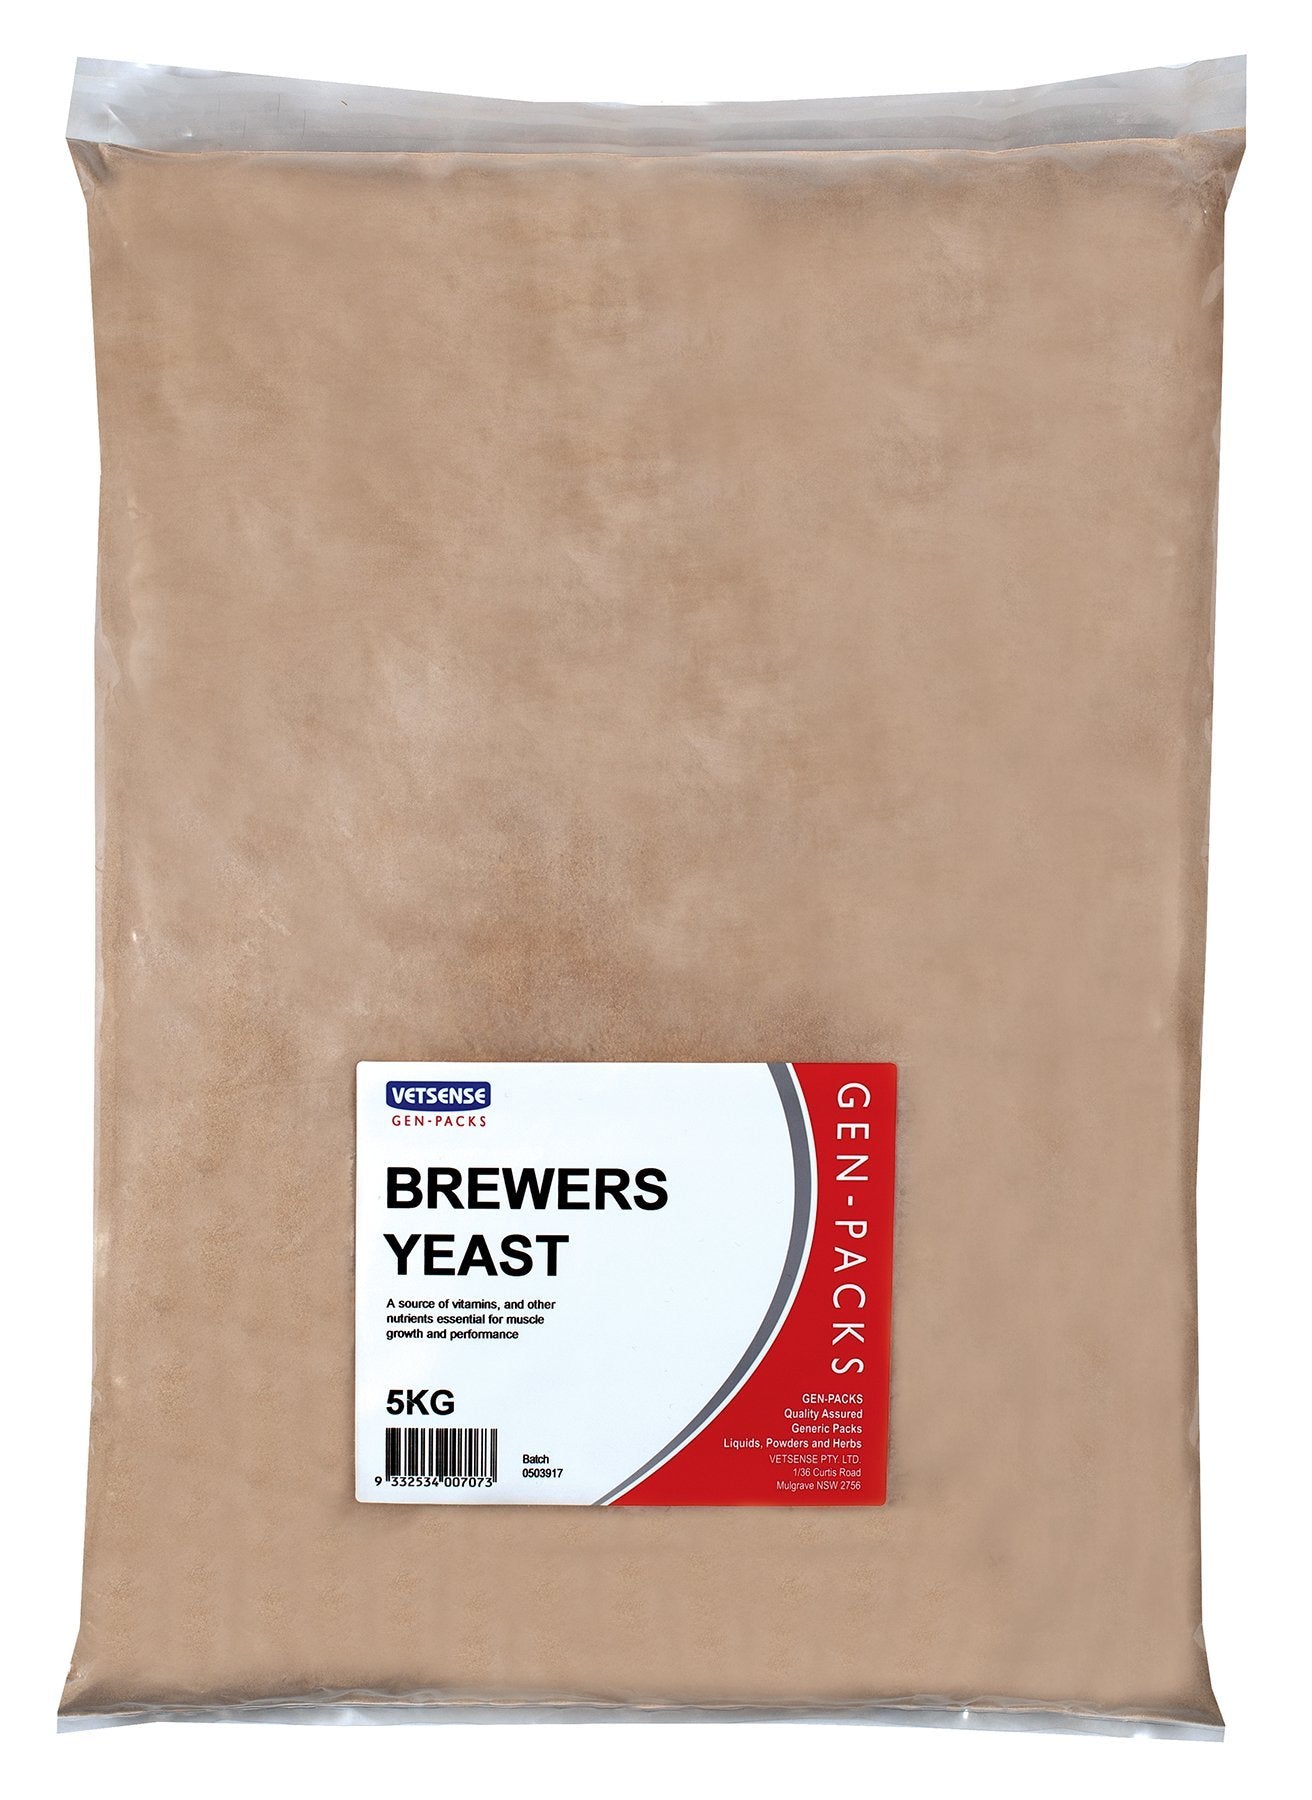 Vetsense Gen Packs Brewers Yeast - Woonona Petfood & Produce